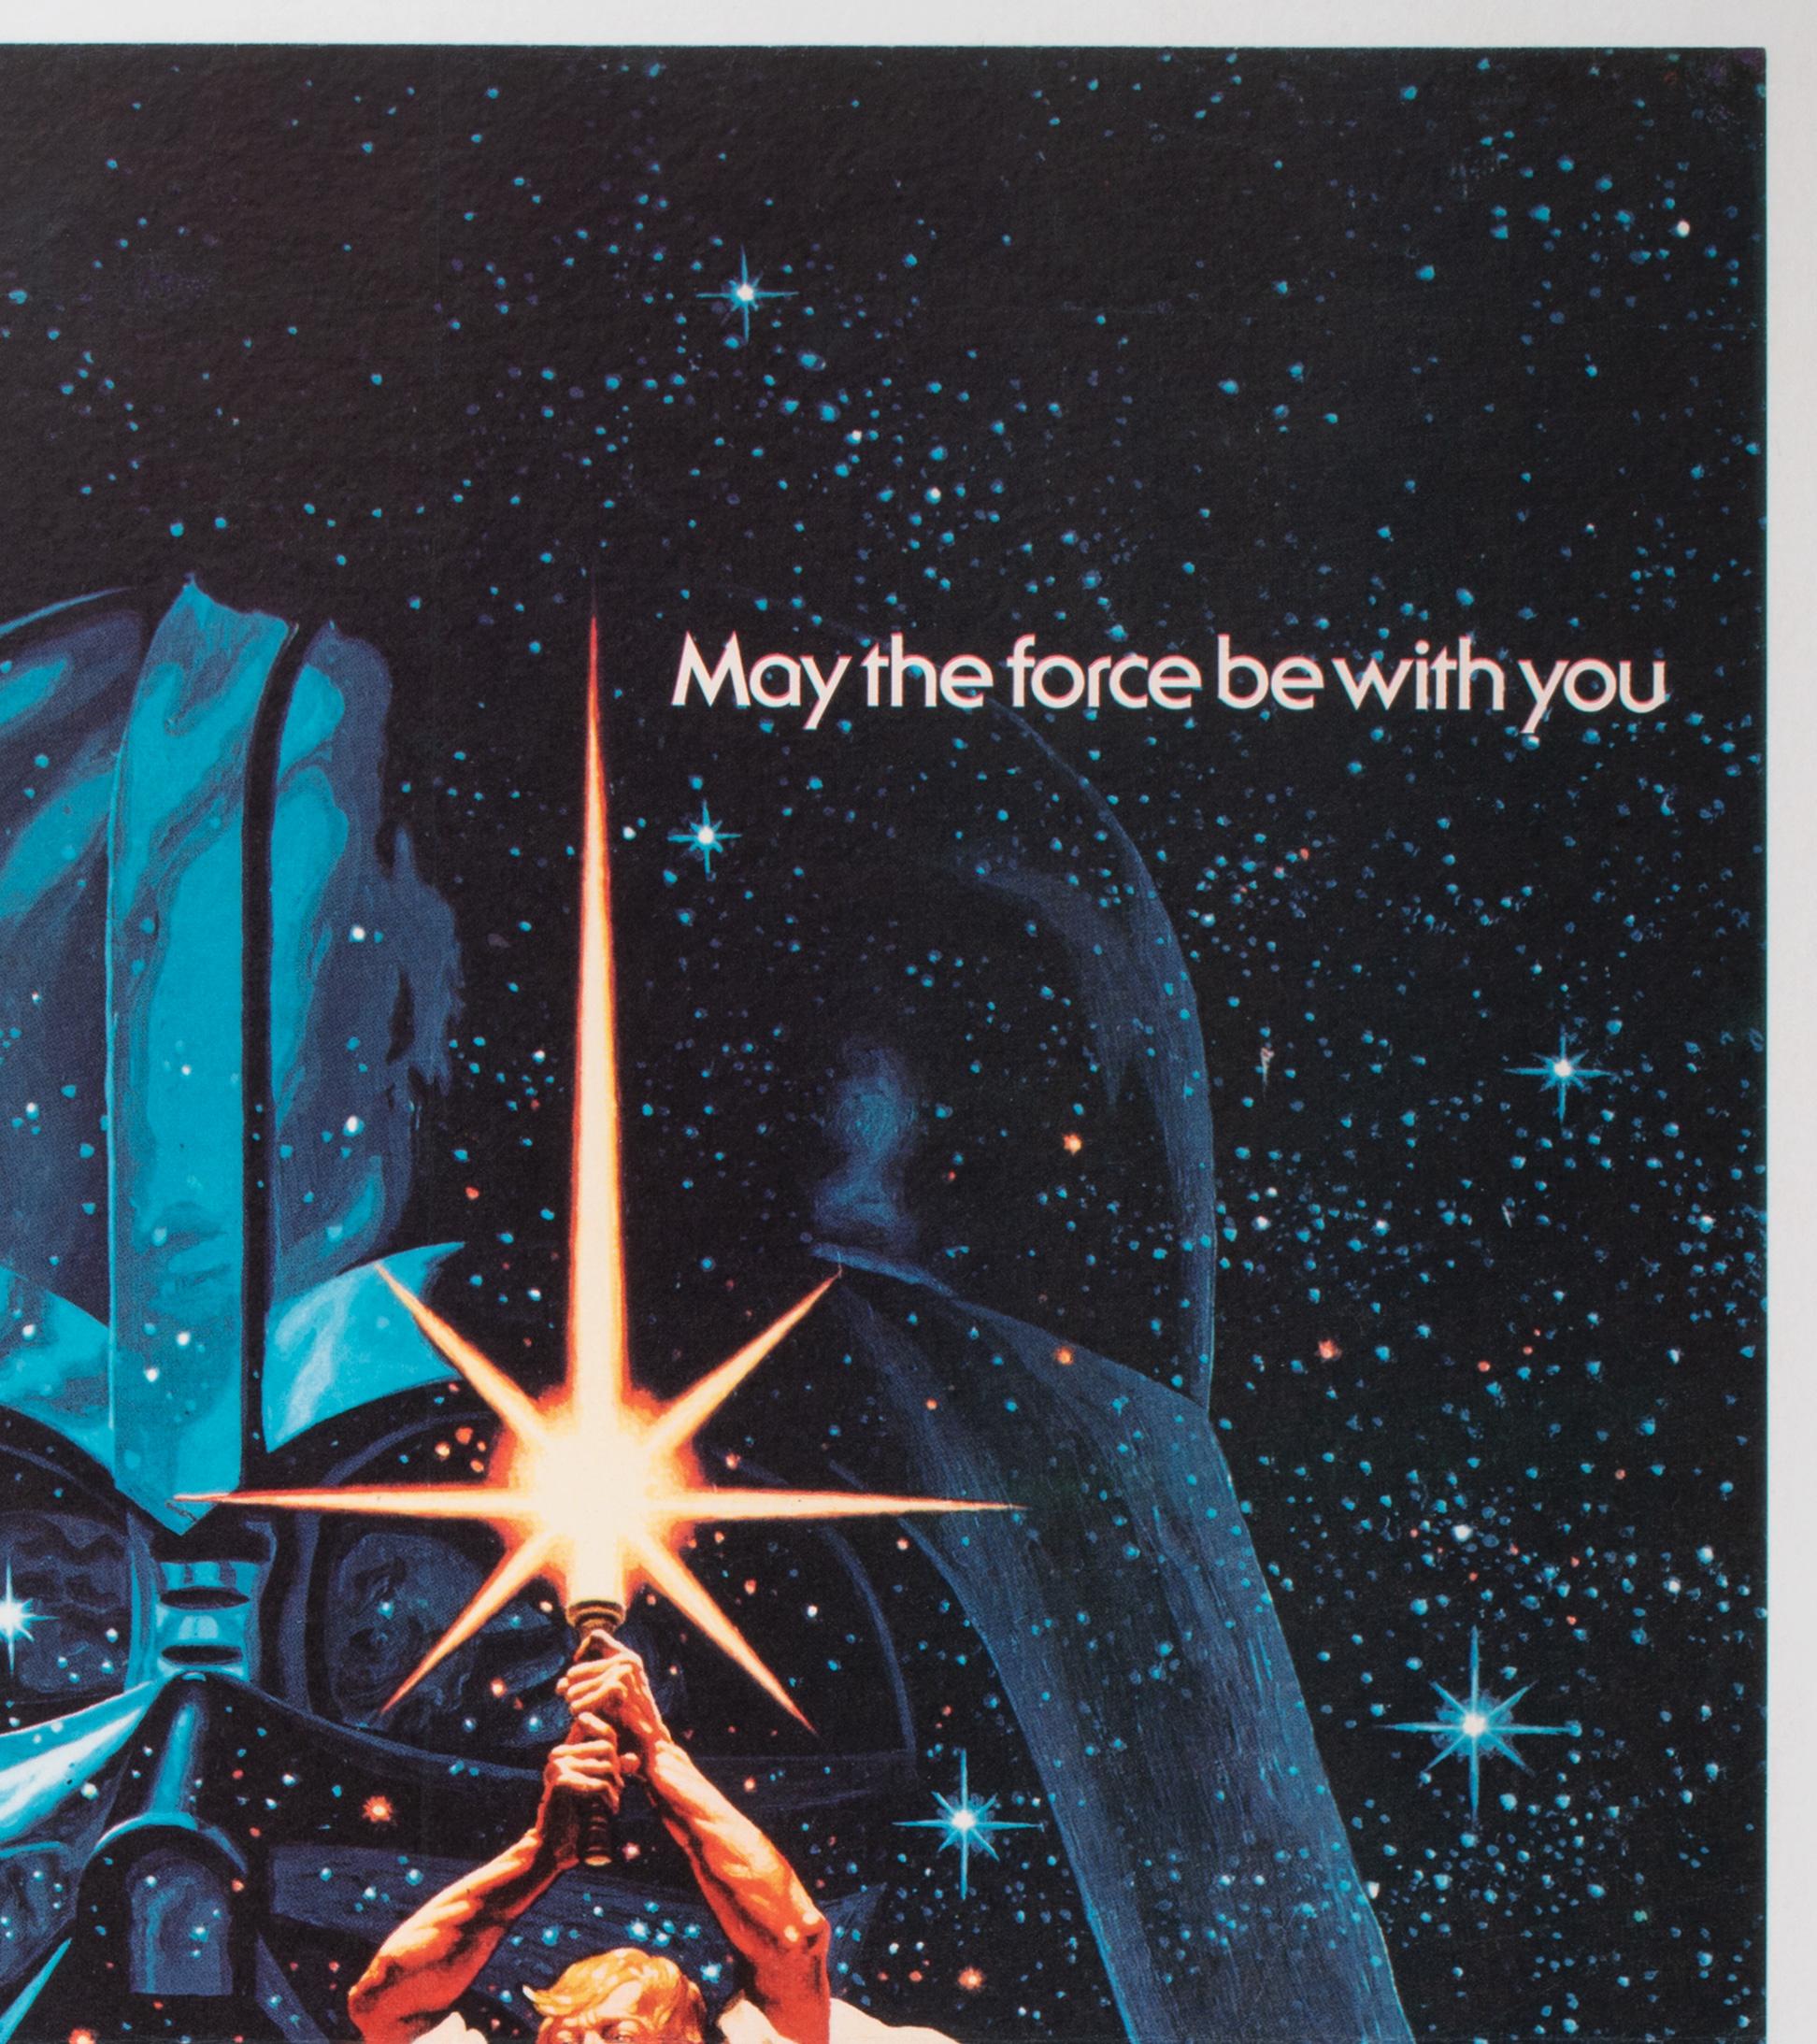 British Star Wars 1977 UK Quad Film Movie Poster, Greg and Tim Hildebrandt For Sale